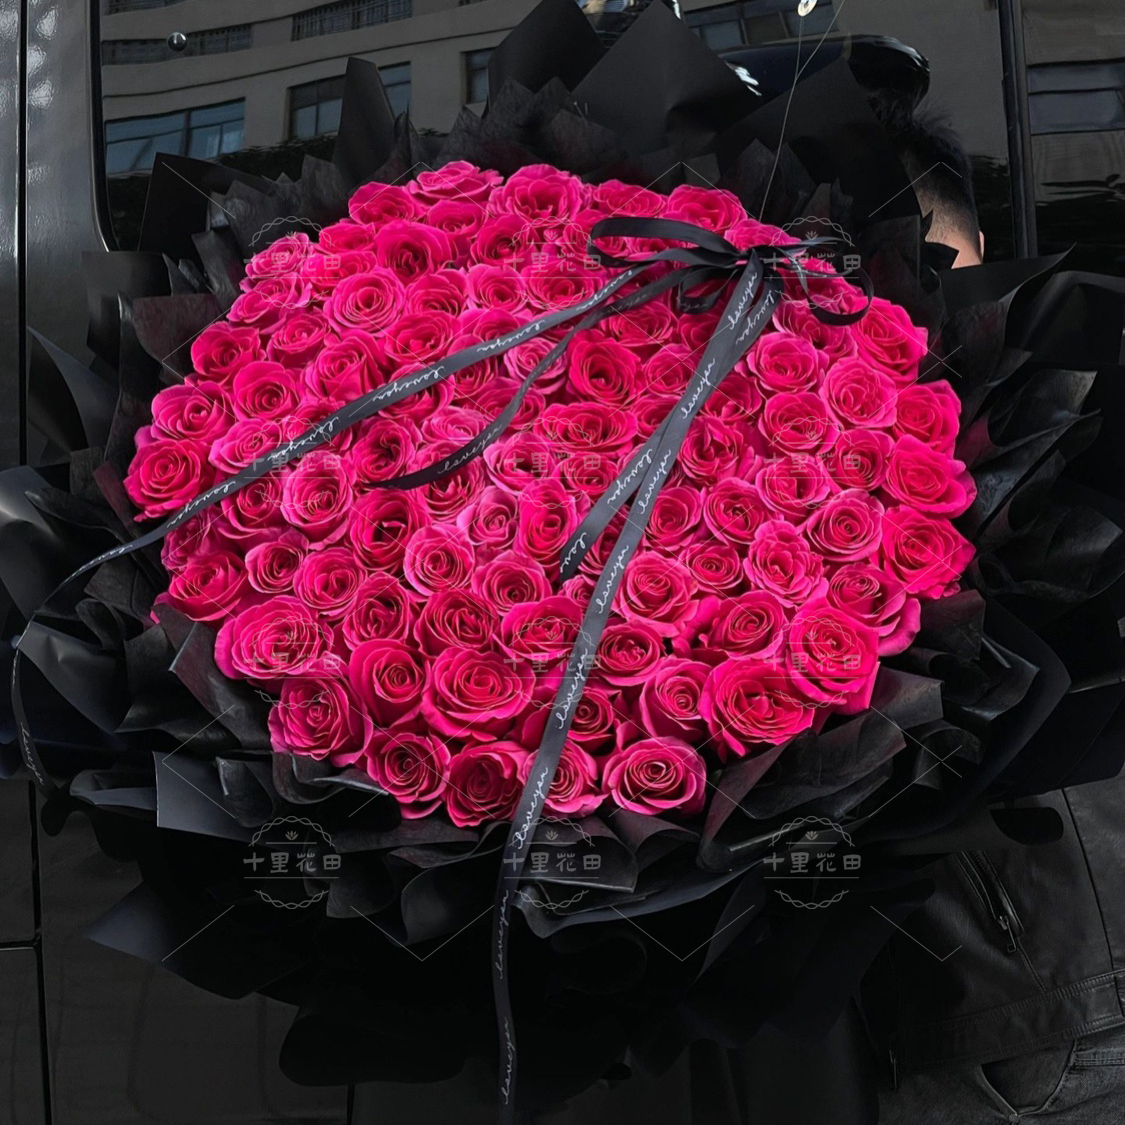 【爱你很久很久】99朵弗洛伊德玫瑰花束高端花束生日鲜花生日礼物花店送花上门